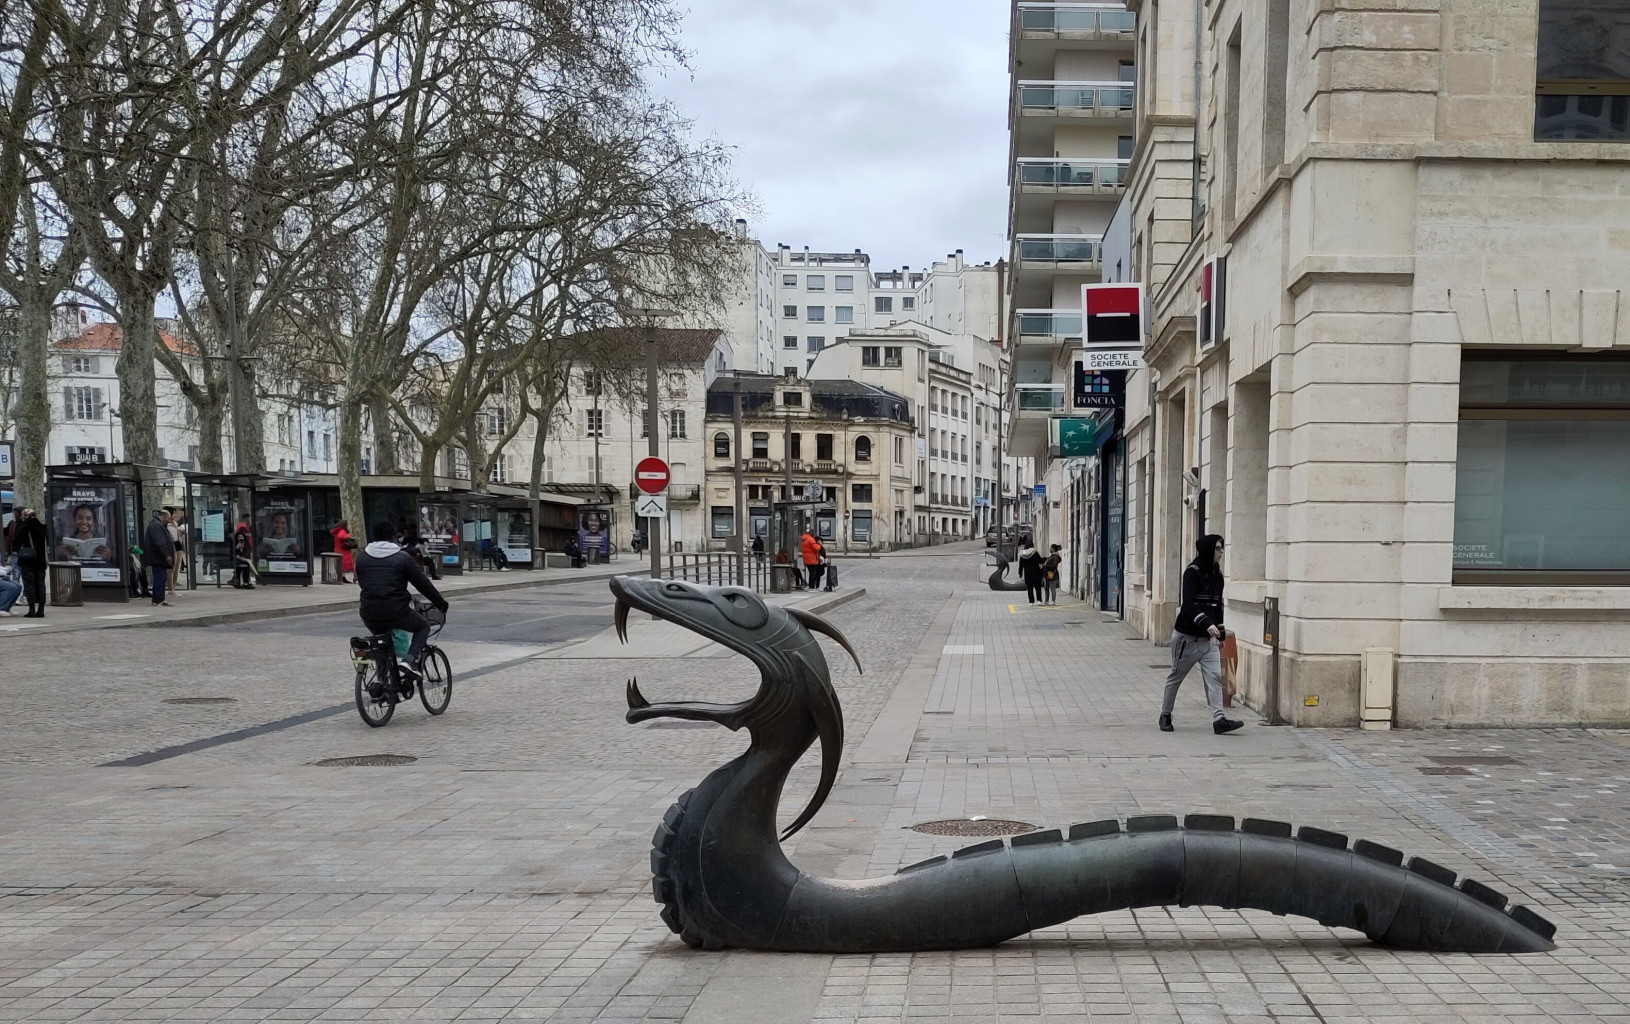 Sculpture d'un dragon, ou plutôt un serpent, en métal noir, qui surgit du trottoir.